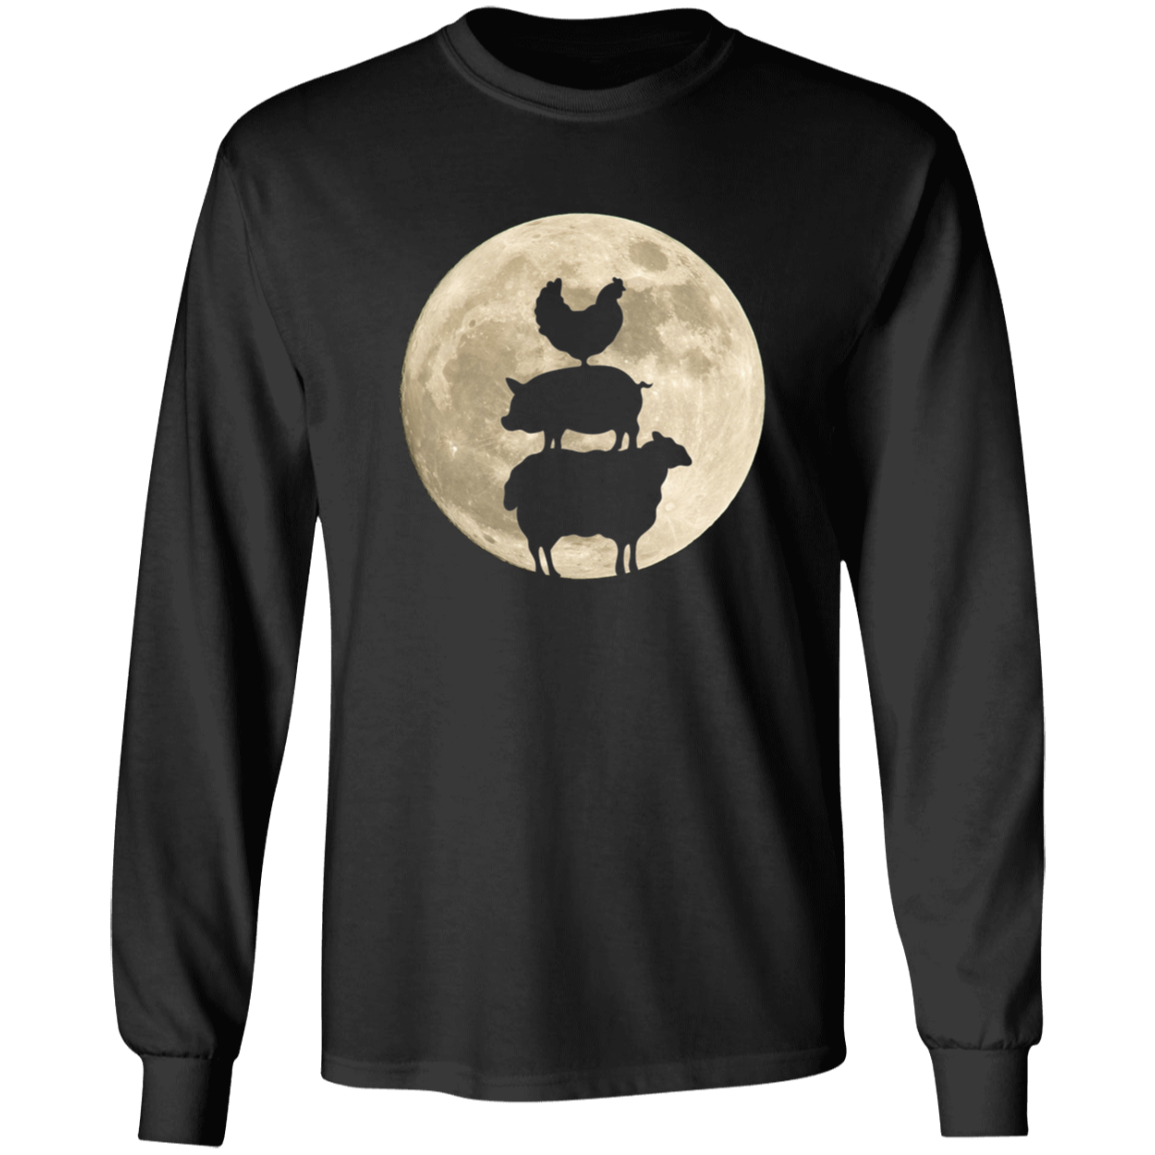 Farm Animal Trio Moon - T-shirts, Hoodies and Sweatshirts